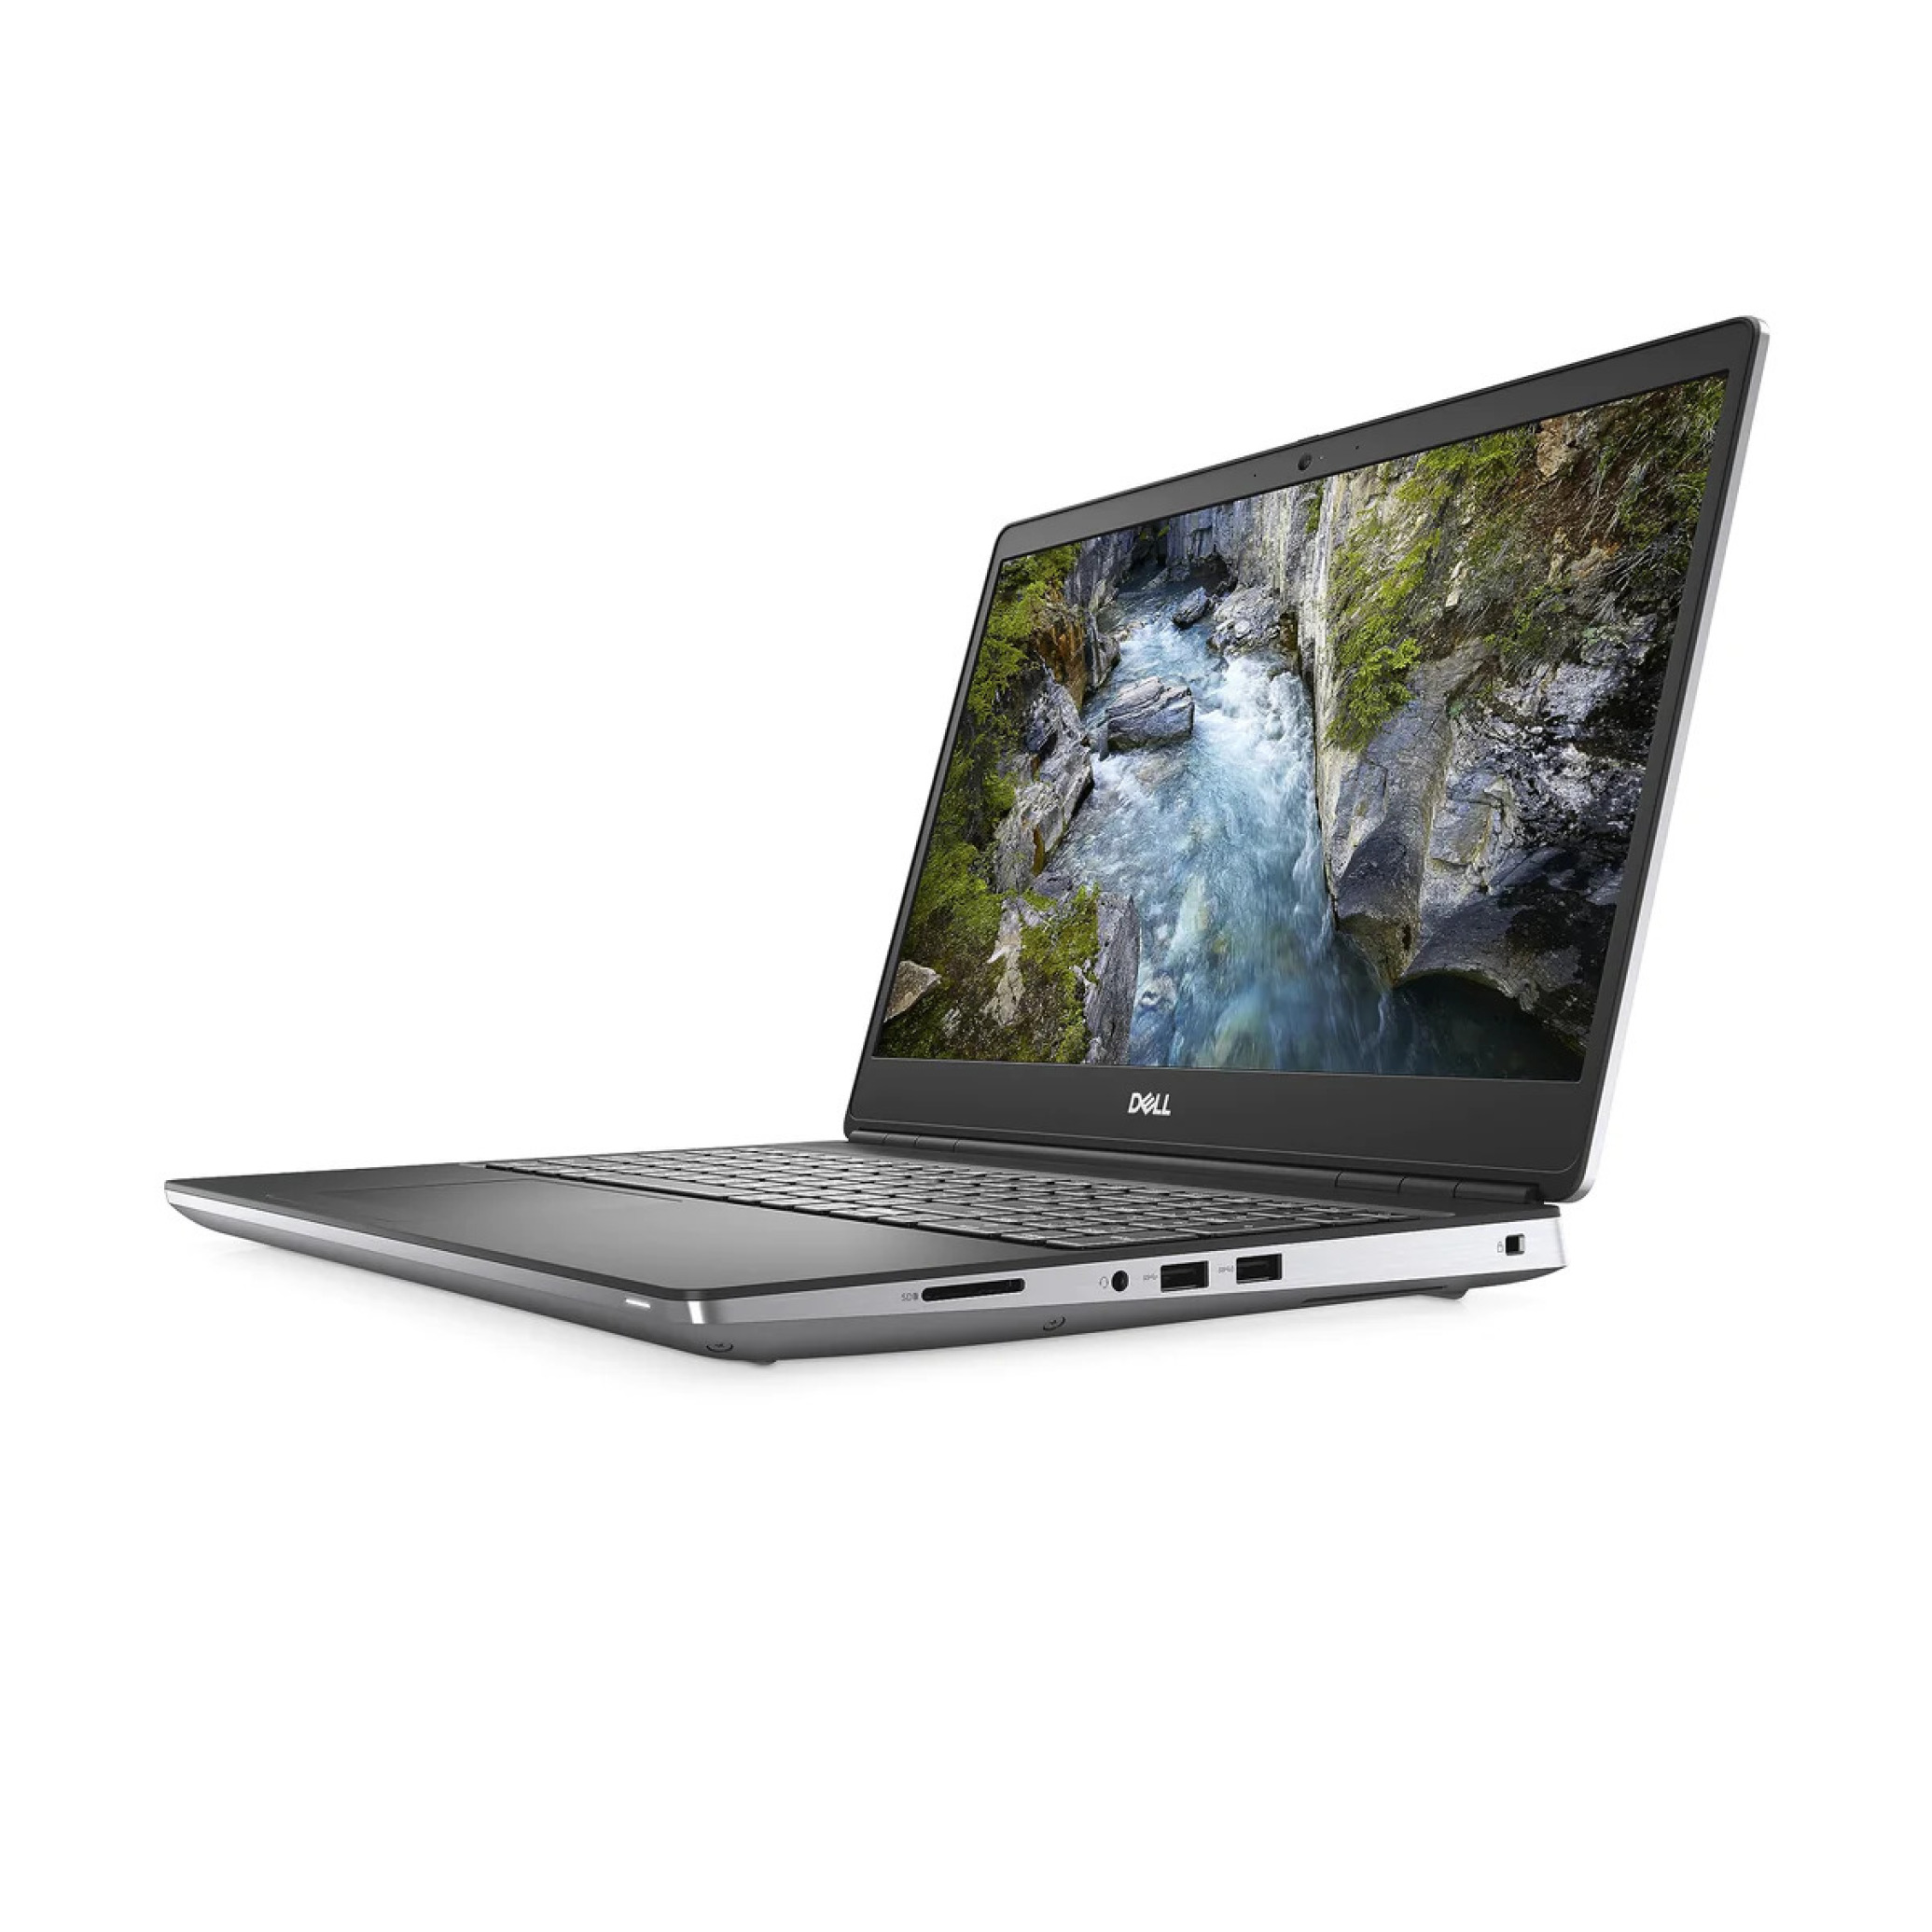  لپ تاپ مخصوص رندر و گیم DELL مدل Precision 7550 پردازنده i7 10850H | لاکچری لپ تاپ 